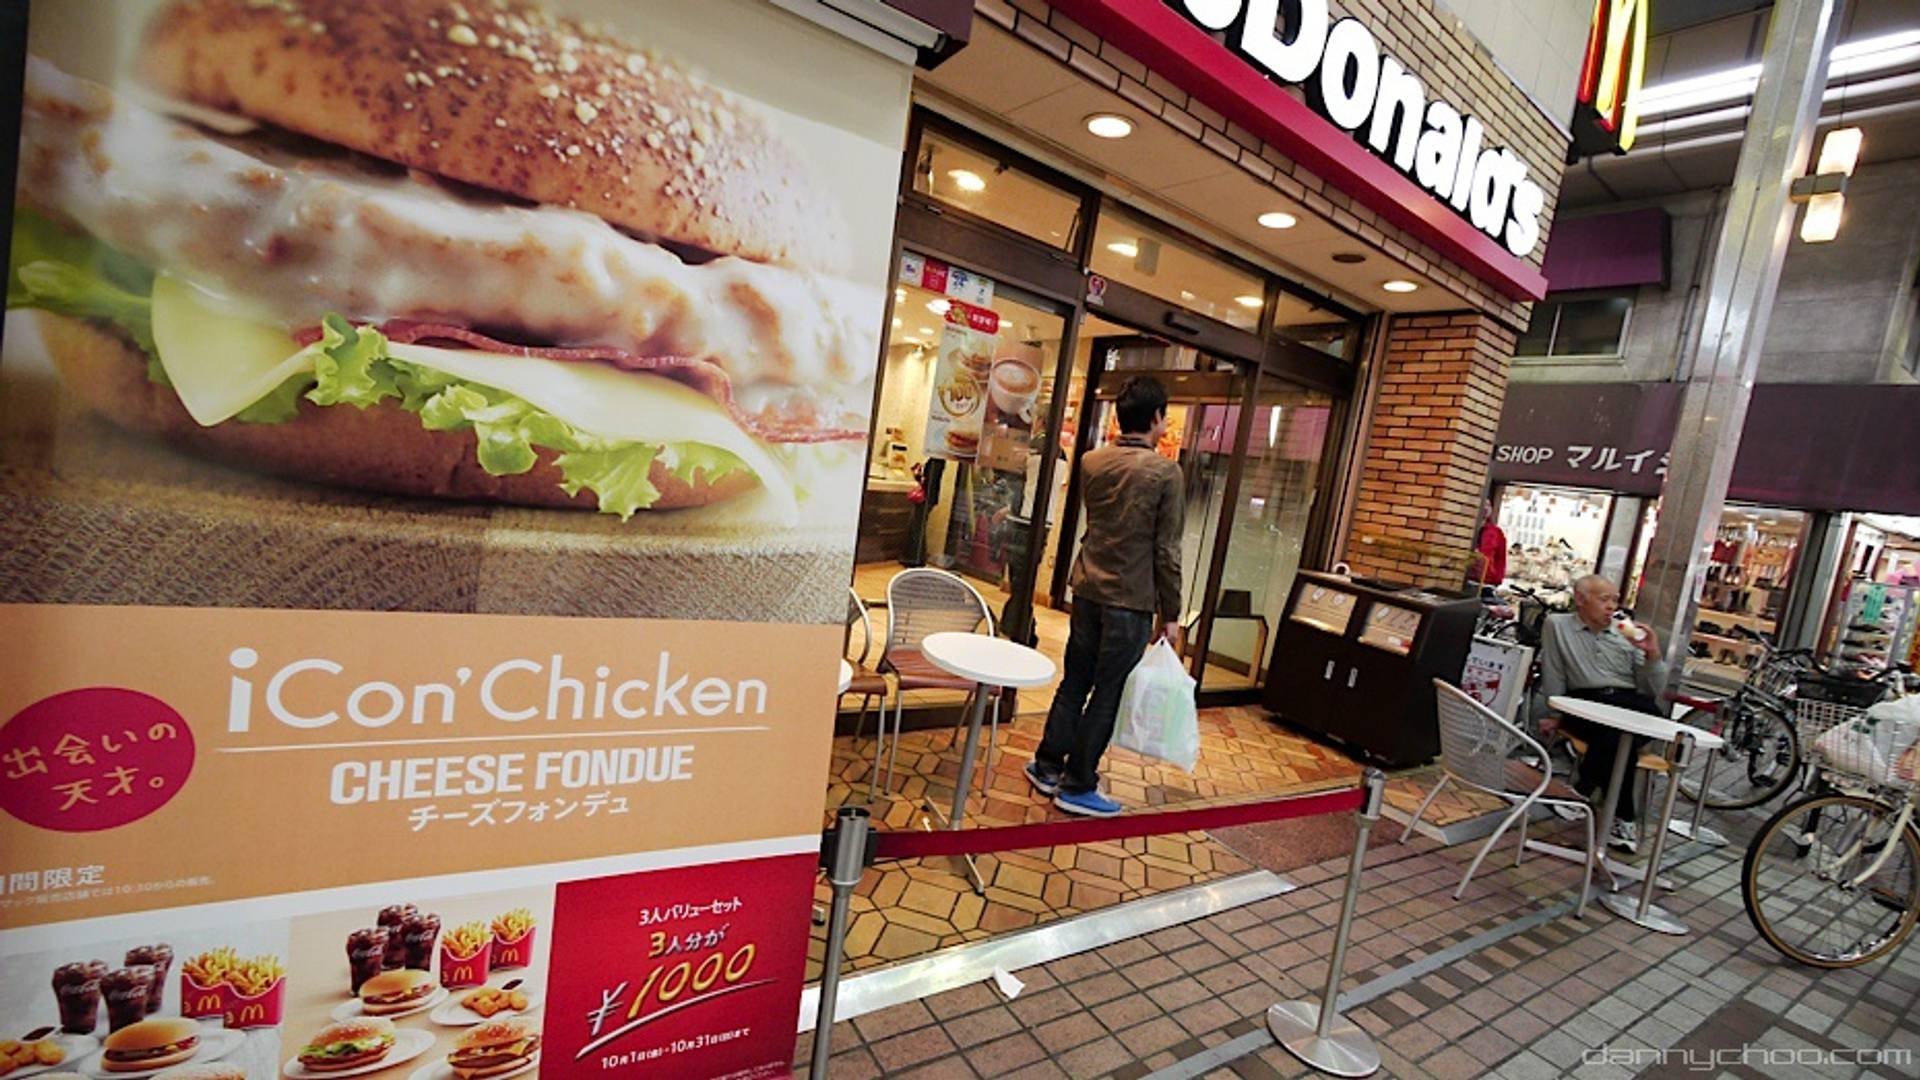 McDonald’s Japan launches complaints app